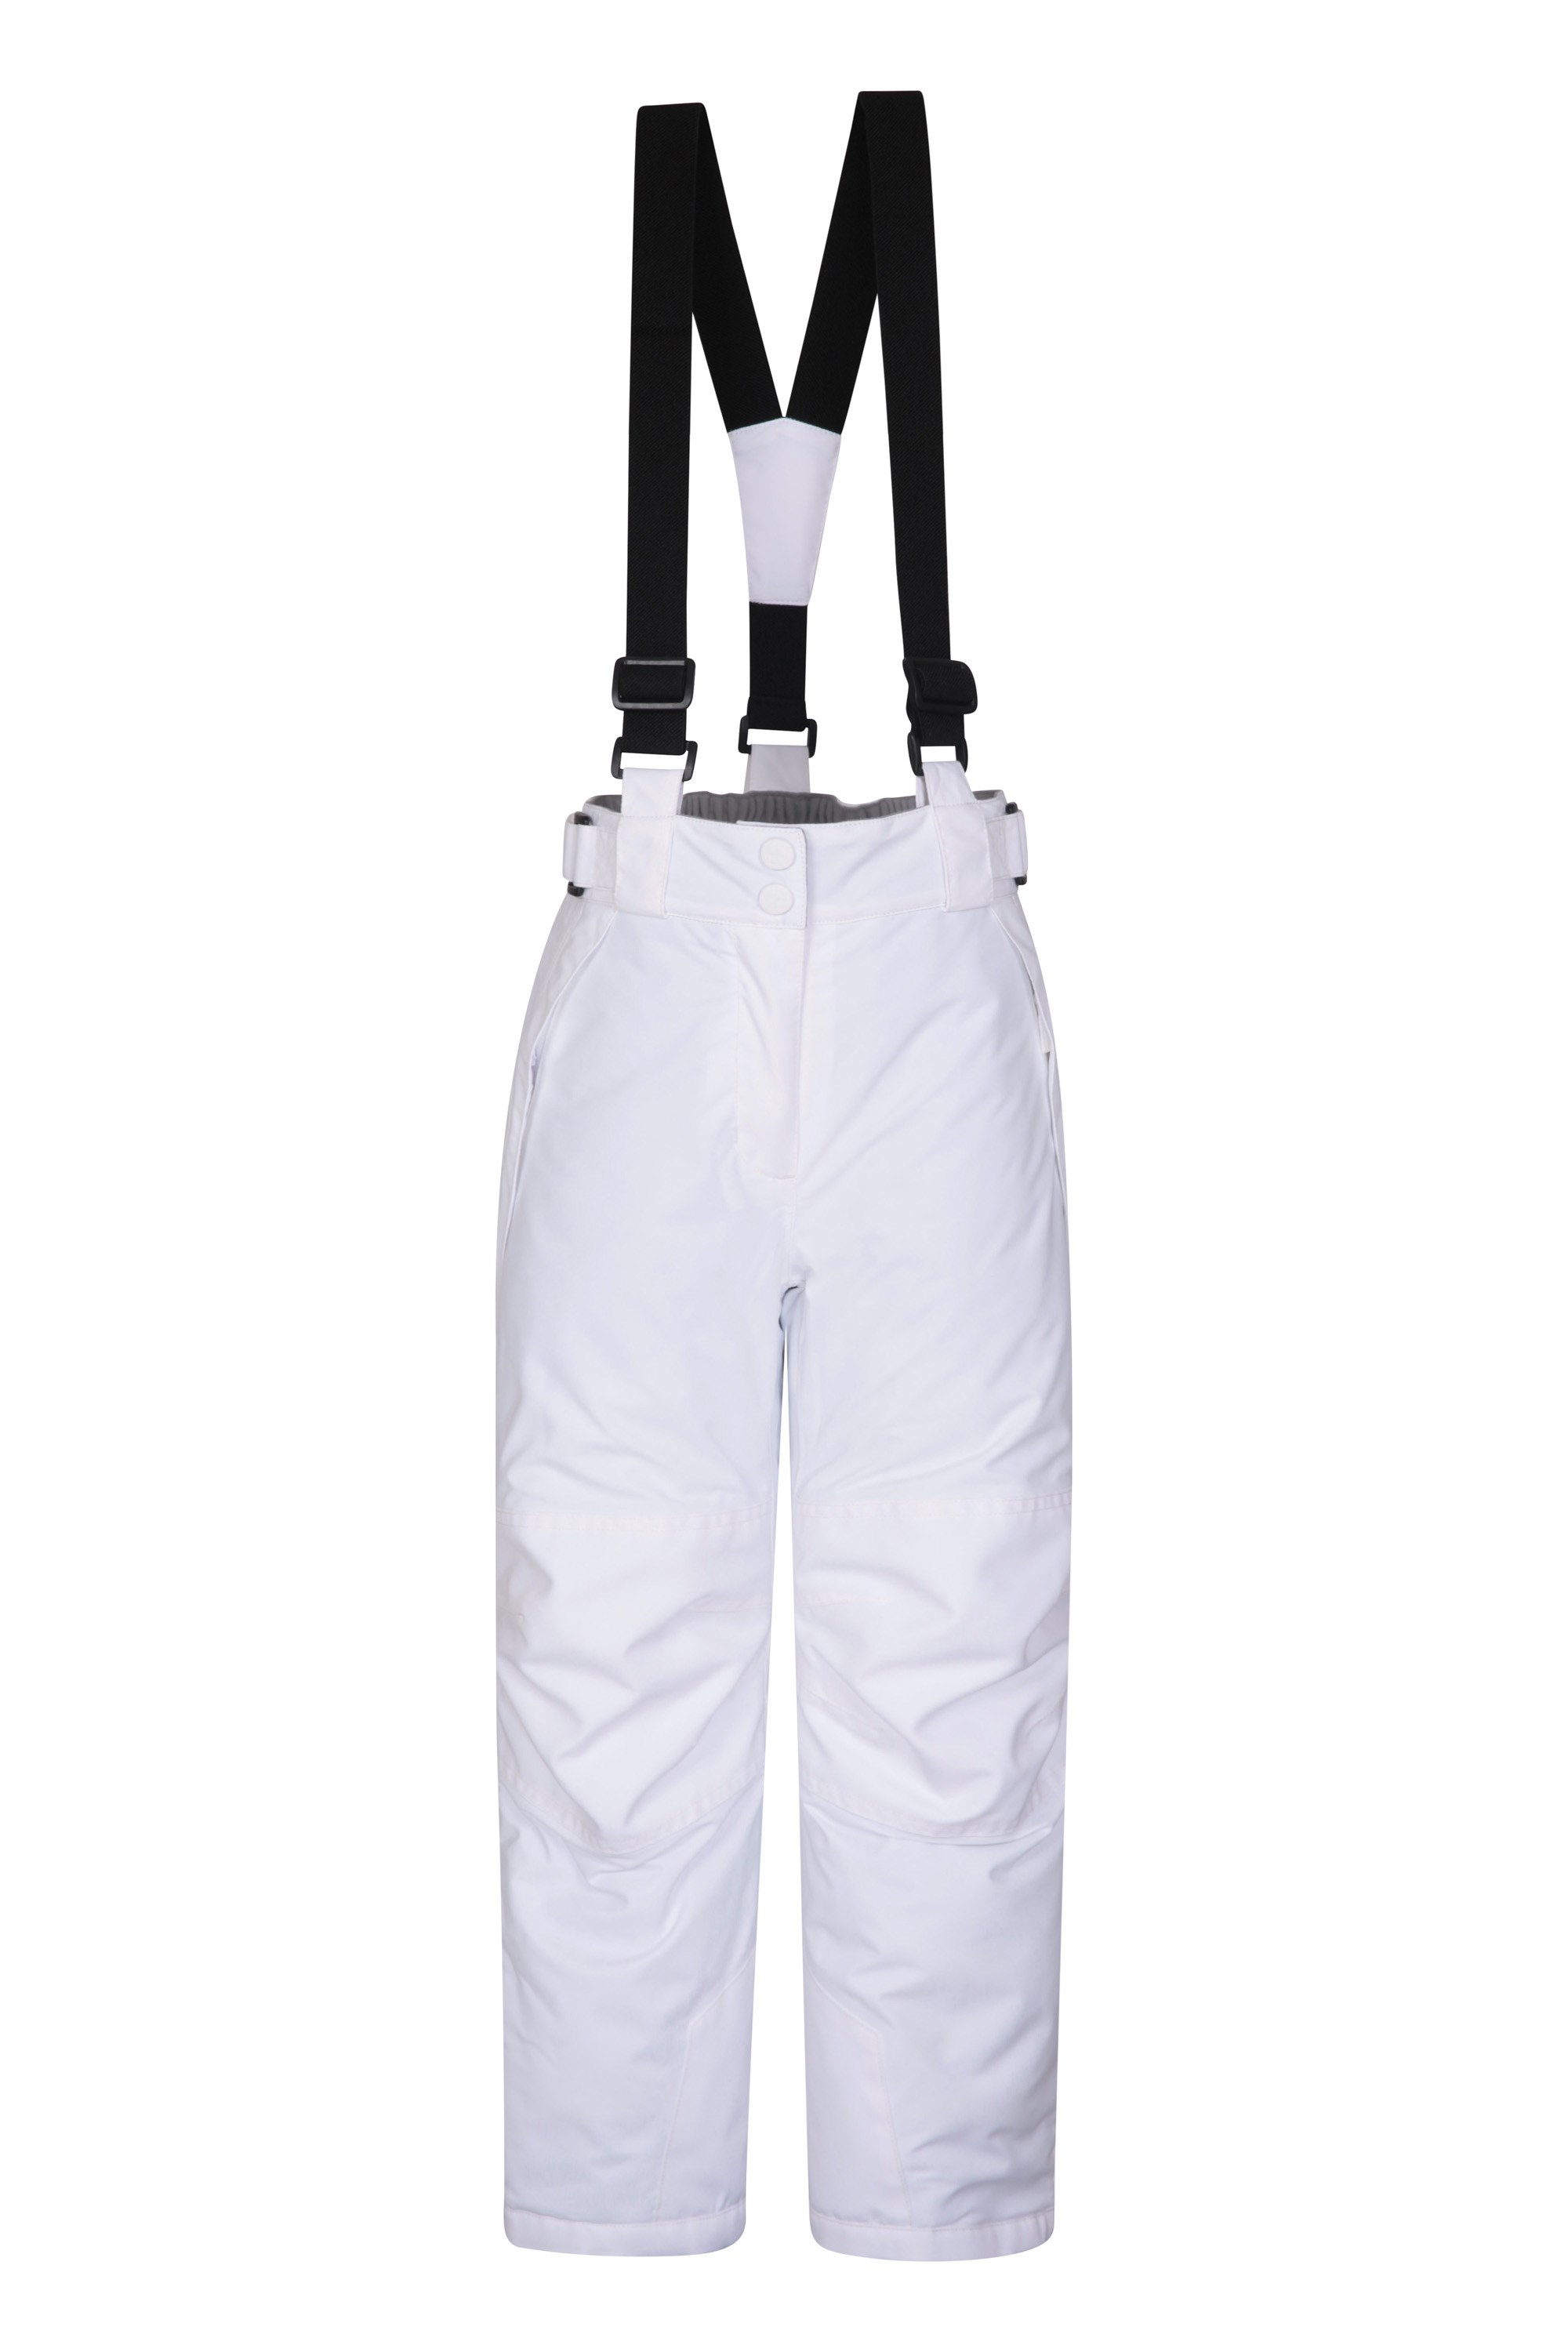 Pantalon de Ski Enfant Falcon Extreme - Blanc